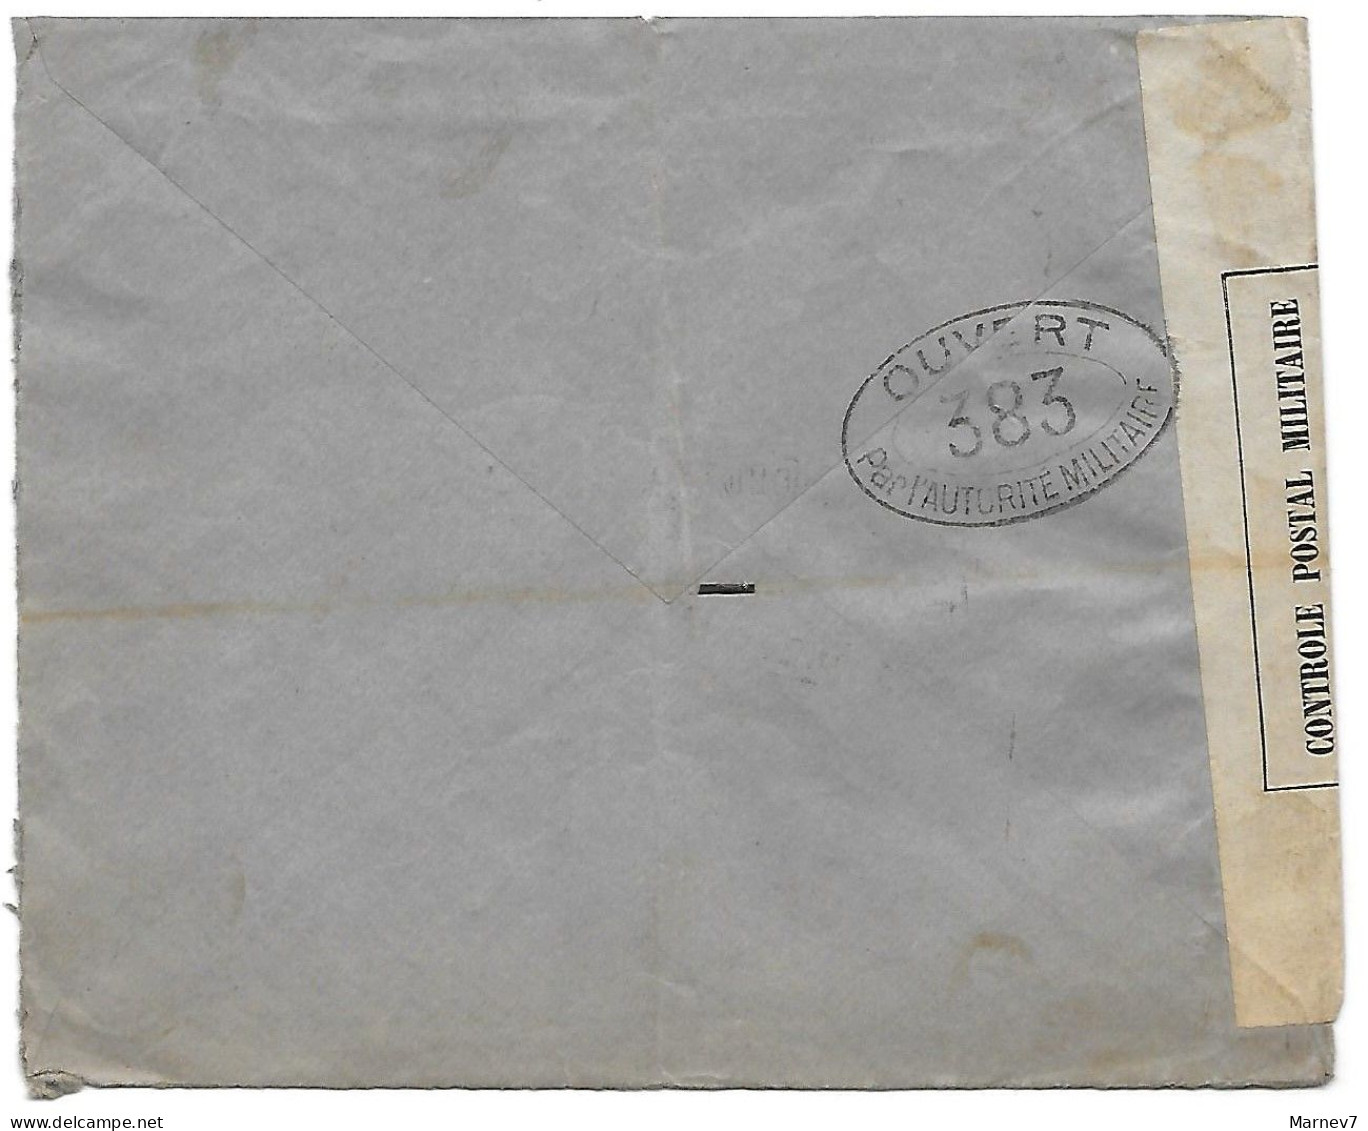 Lettre De LISBONNE Portugal Pour St ETIENNE 5 Mars 1917 - Censurée Censure - Ouvert Par Autorité Militaire 381 - Lettres & Documents